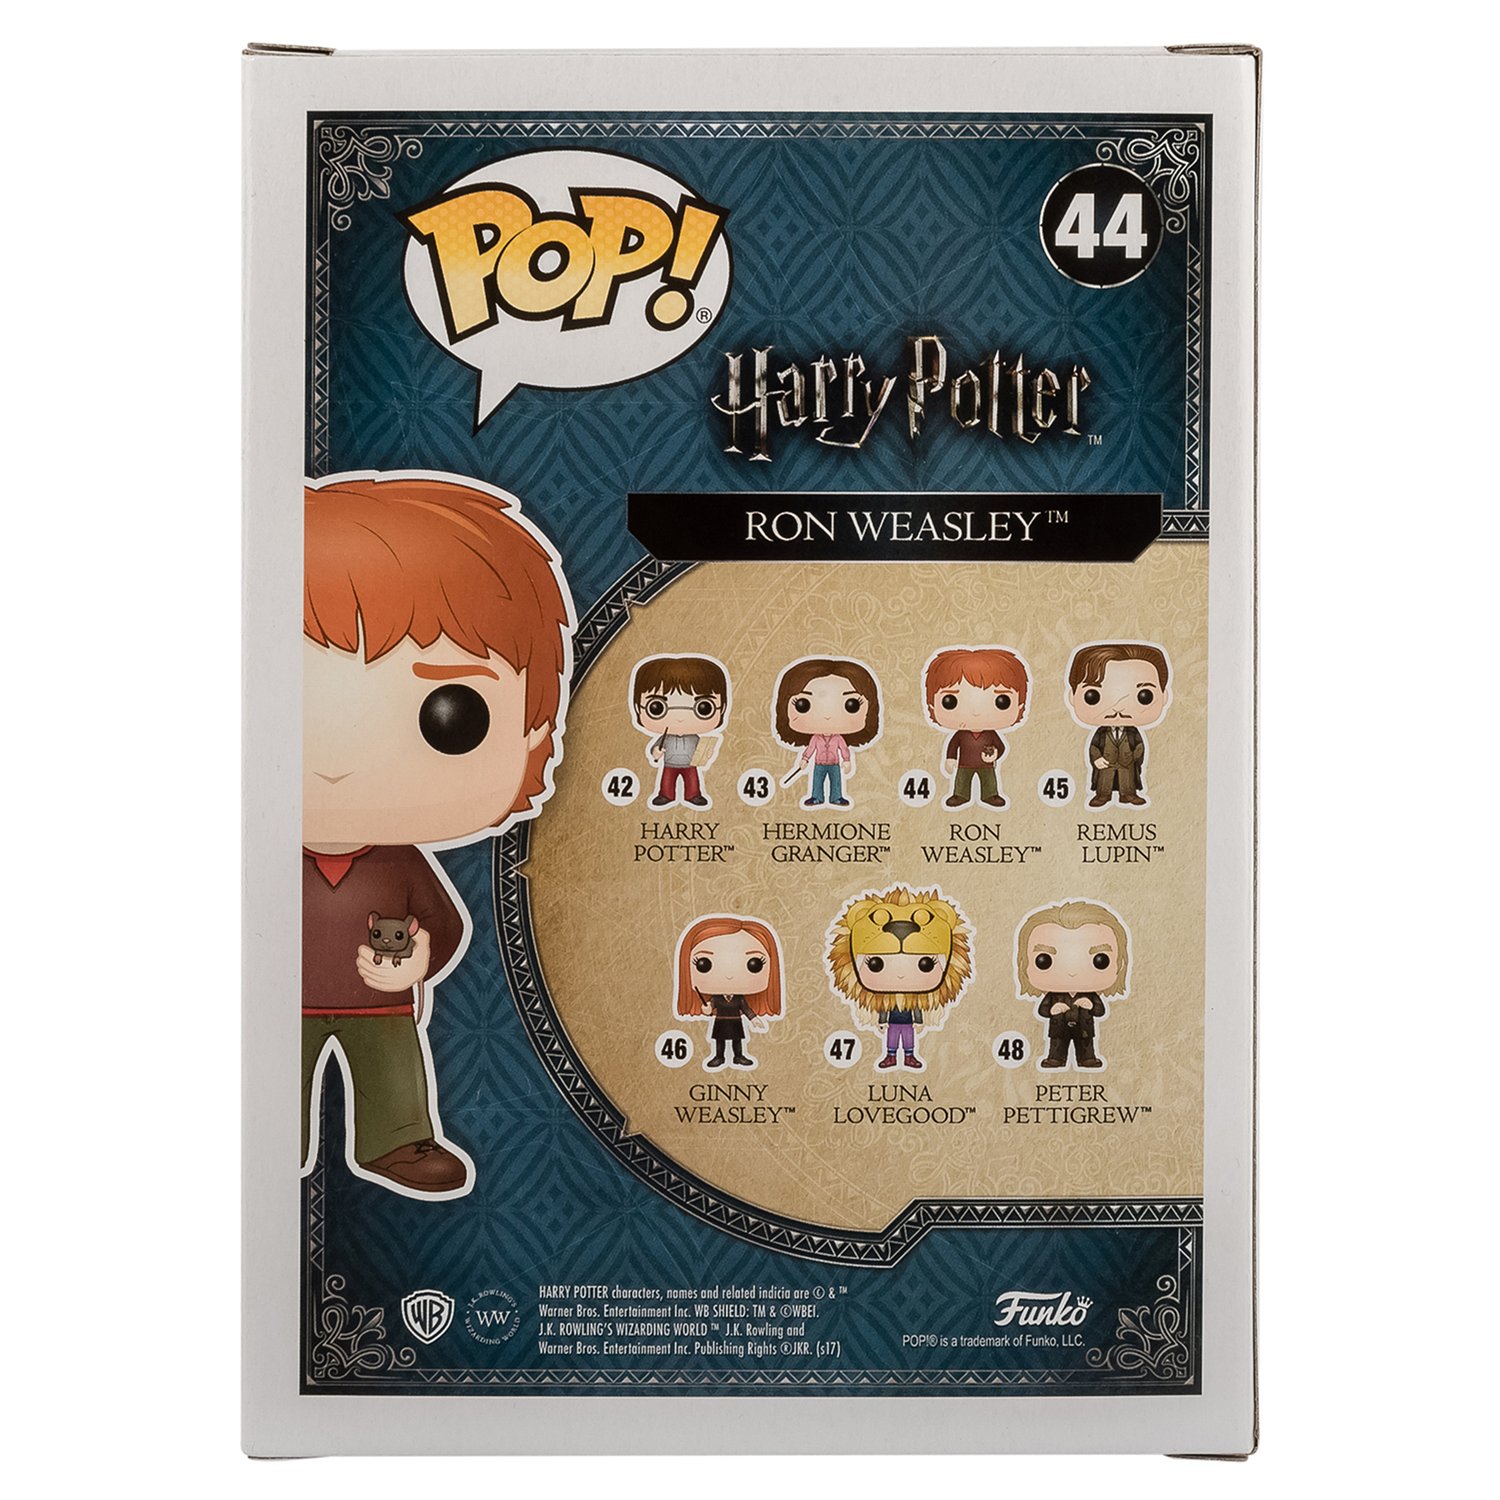 Фигурка Funko Pop vinyl Harry Potter Ron Weasley w Scabbers